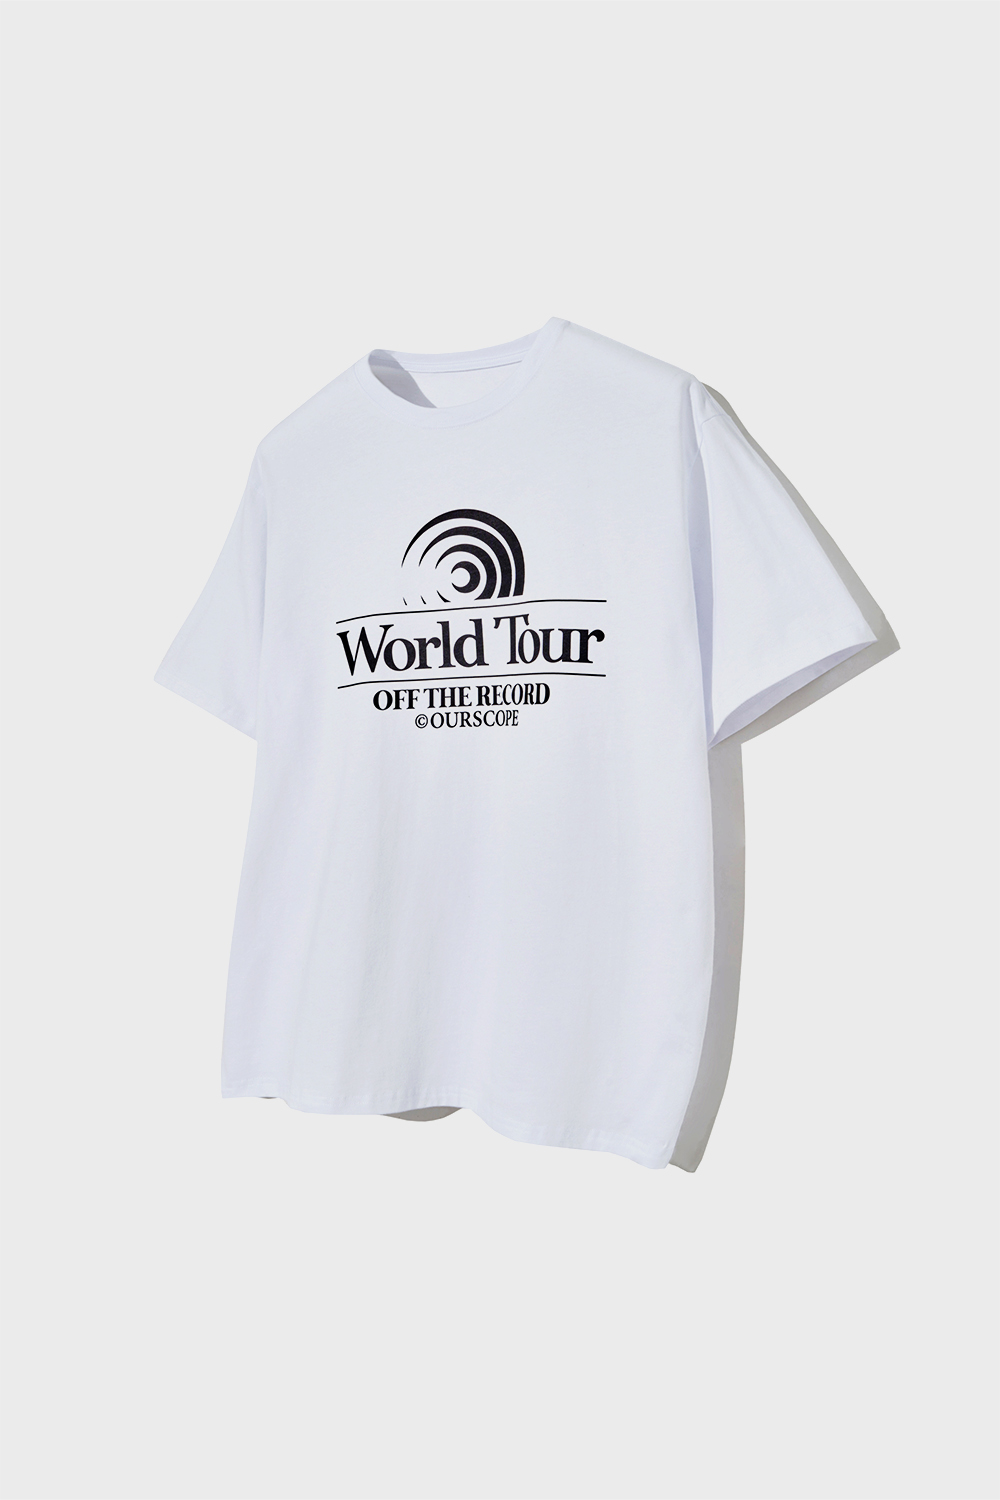 World Tour OTR T-Shirts (White)